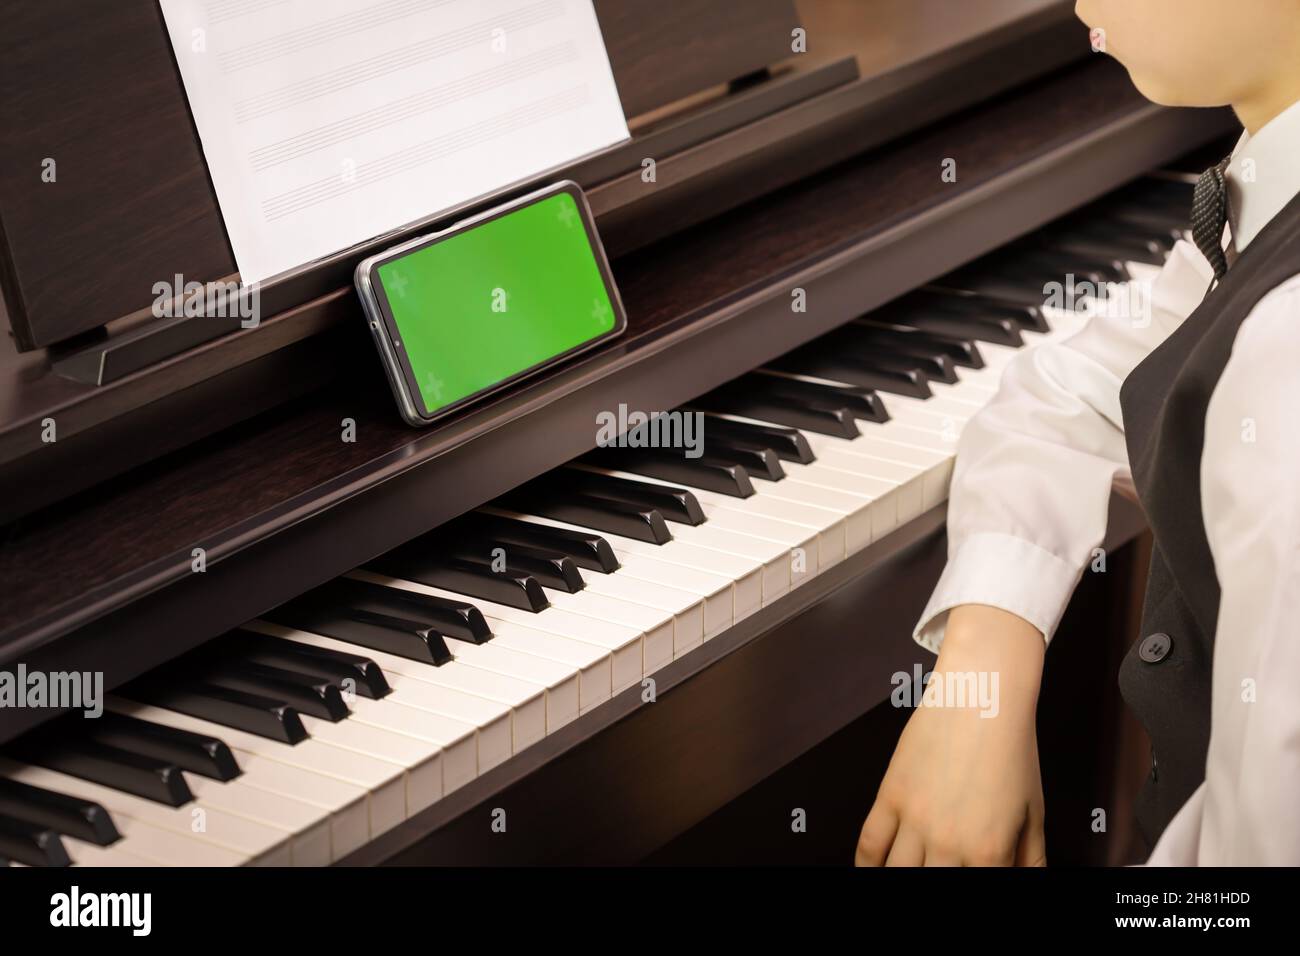 Ein Junge sitzt an einem elektronischen Klavier und schaut in ein Smartphone mit grünem Bildschirm. Modell für mobile Musik-Apps. Klavierunterricht online. Online-Musikerziehung Stockfoto